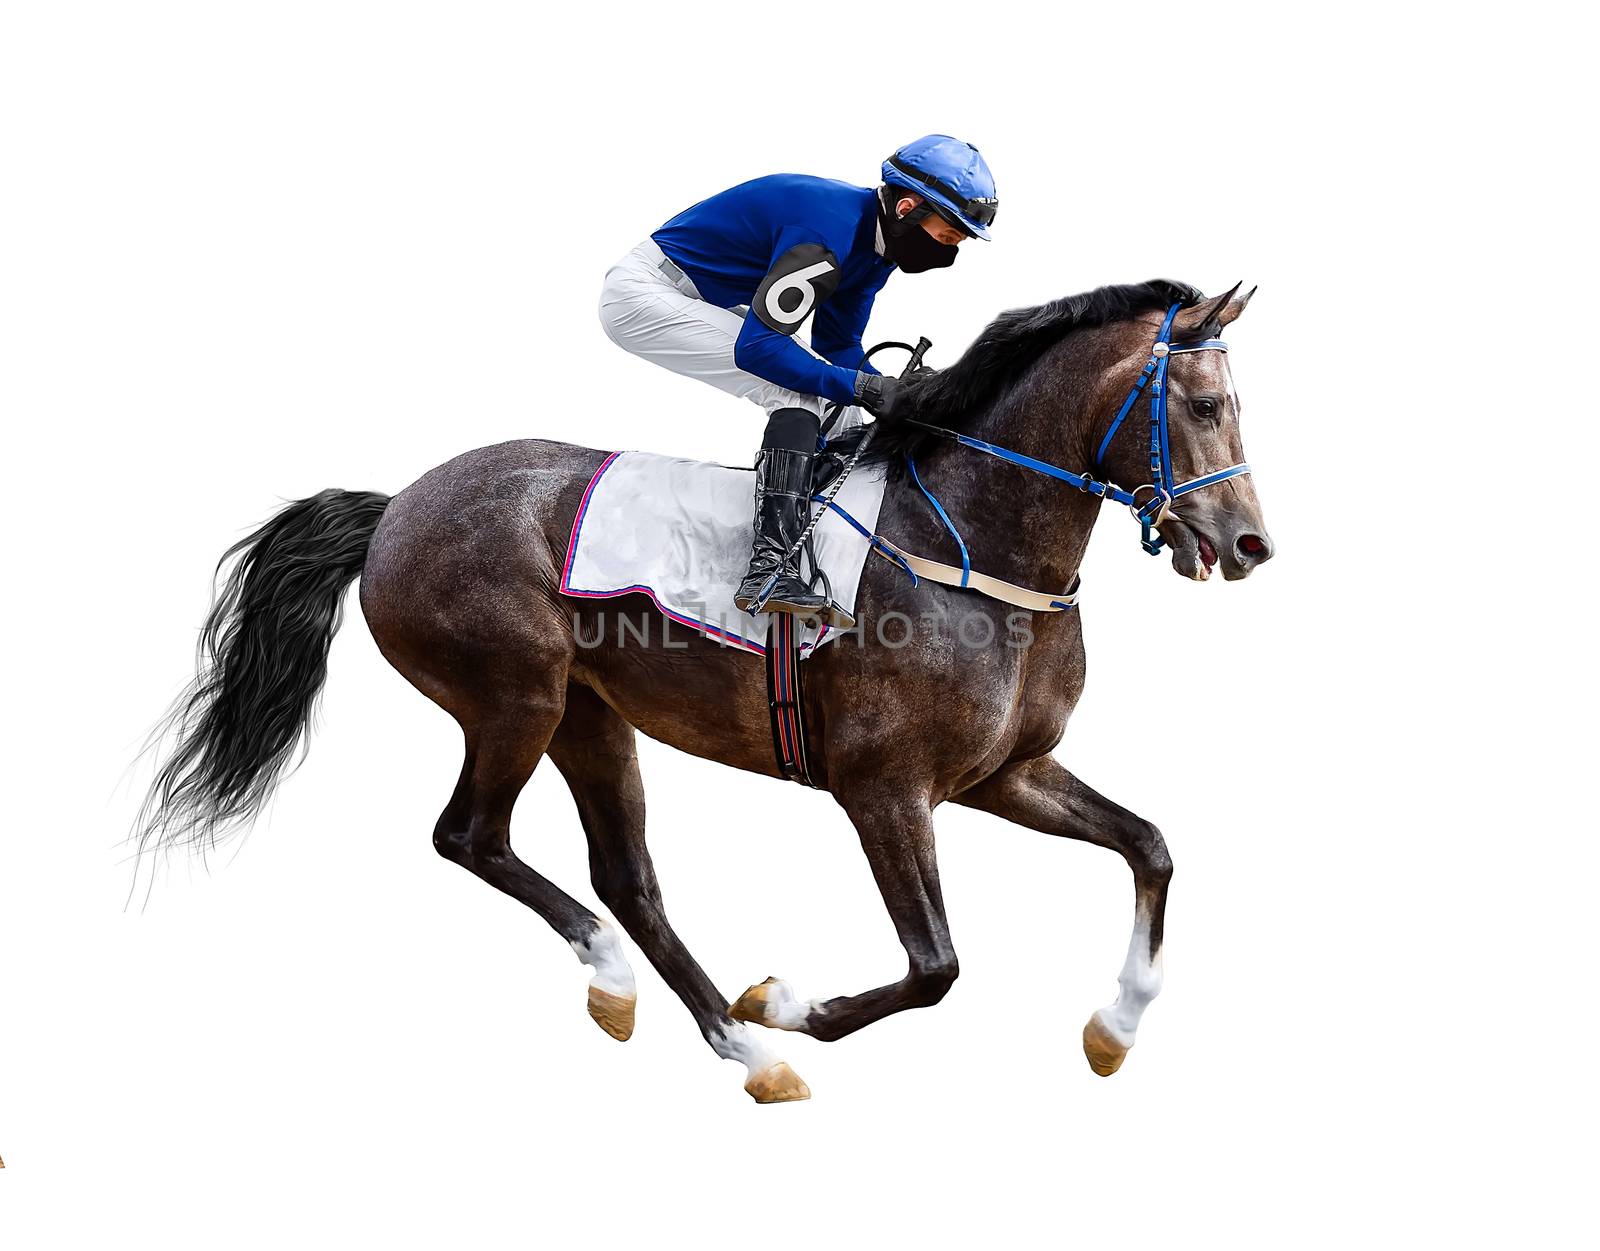 horse jockey racing isolated on white background